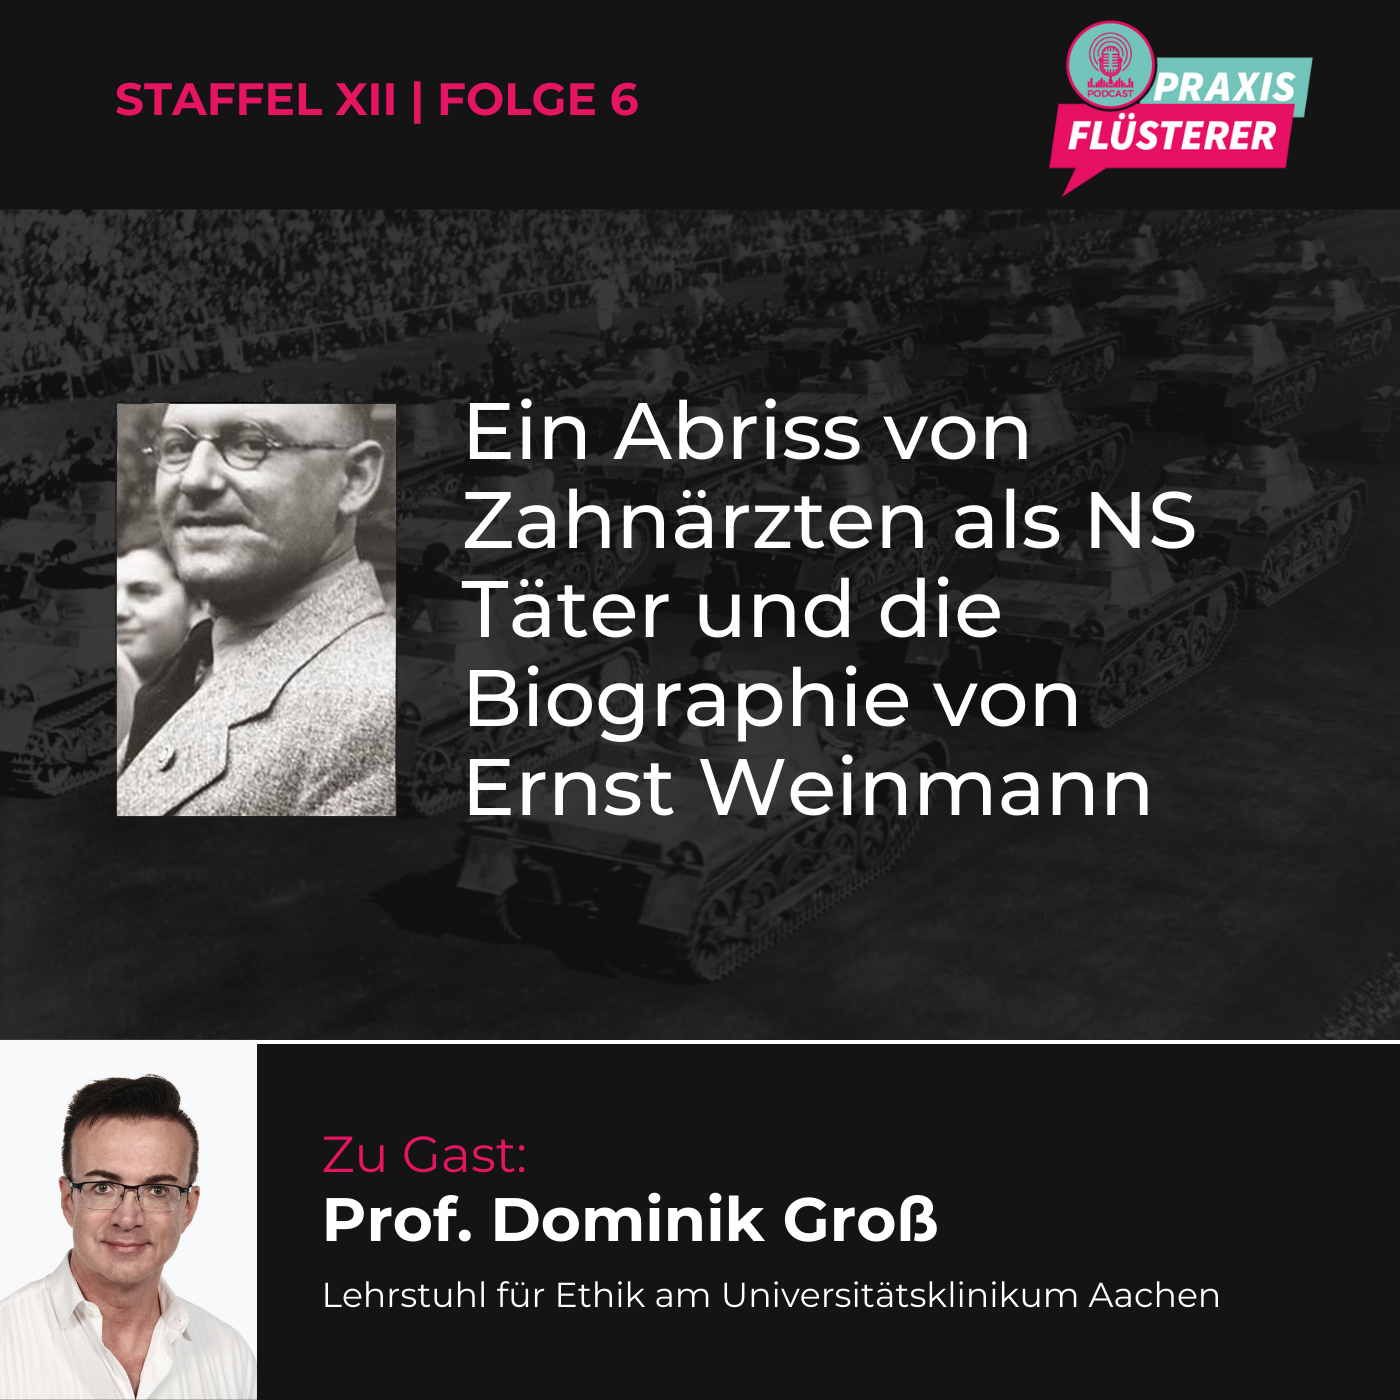 Die dunkle Vergangenheit der Zahnärzte im Nationalsozialismus: Ein Blick auf Täterschaft und Biografie von Ernst Weinmann